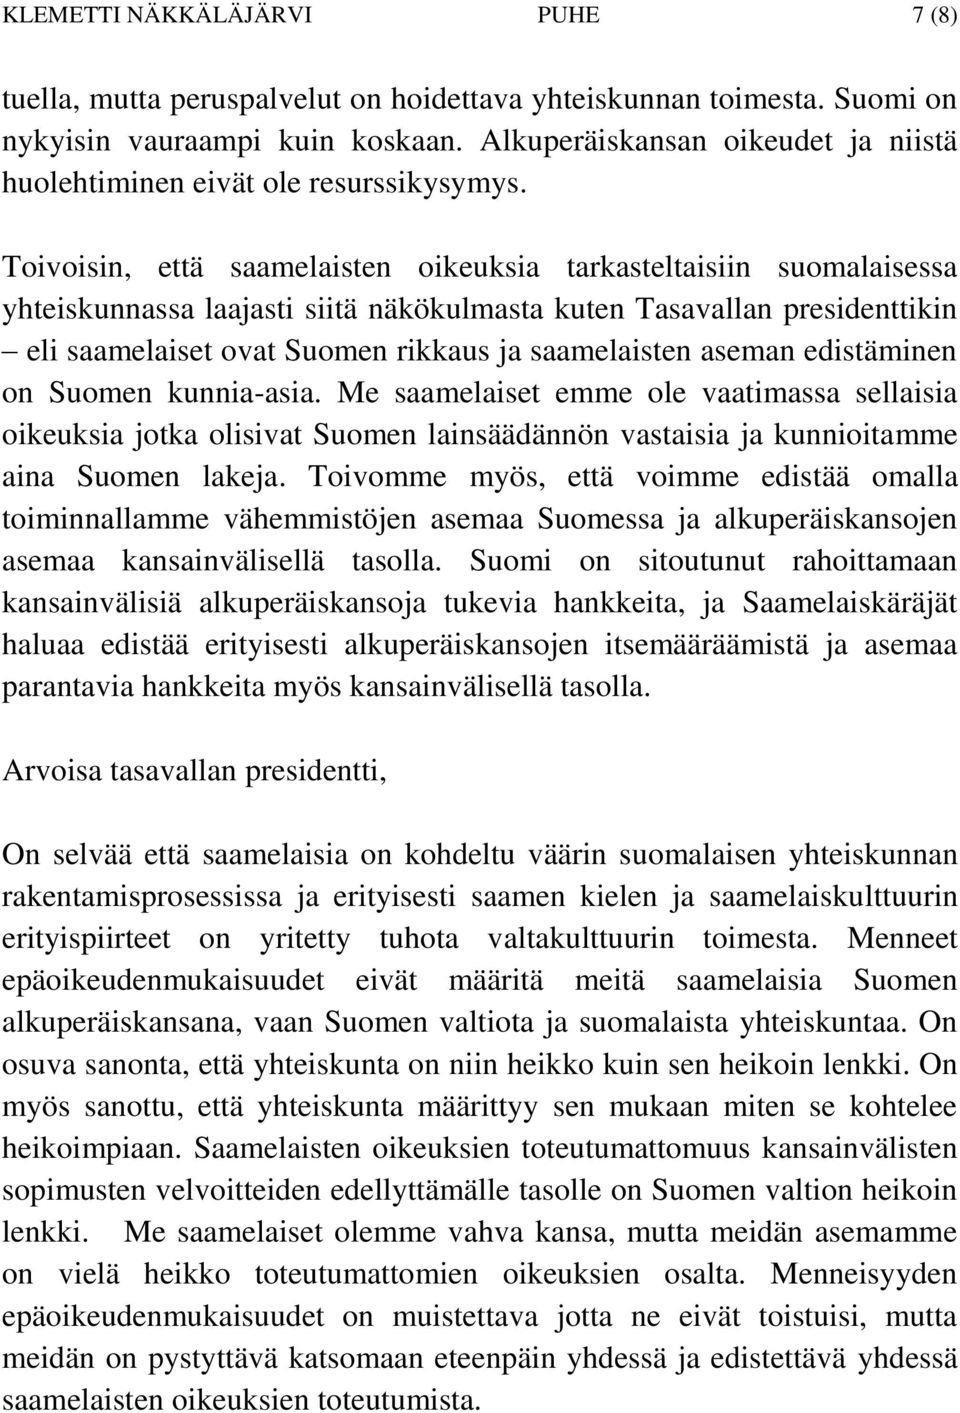 Toivoisin, että saamelaisten oikeuksia tarkasteltaisiin suomalaisessa yhteiskunnassa laajasti siitä näkökulmasta kuten Tasavallan presidenttikin eli saamelaiset ovat Suomen rikkaus ja saamelaisten